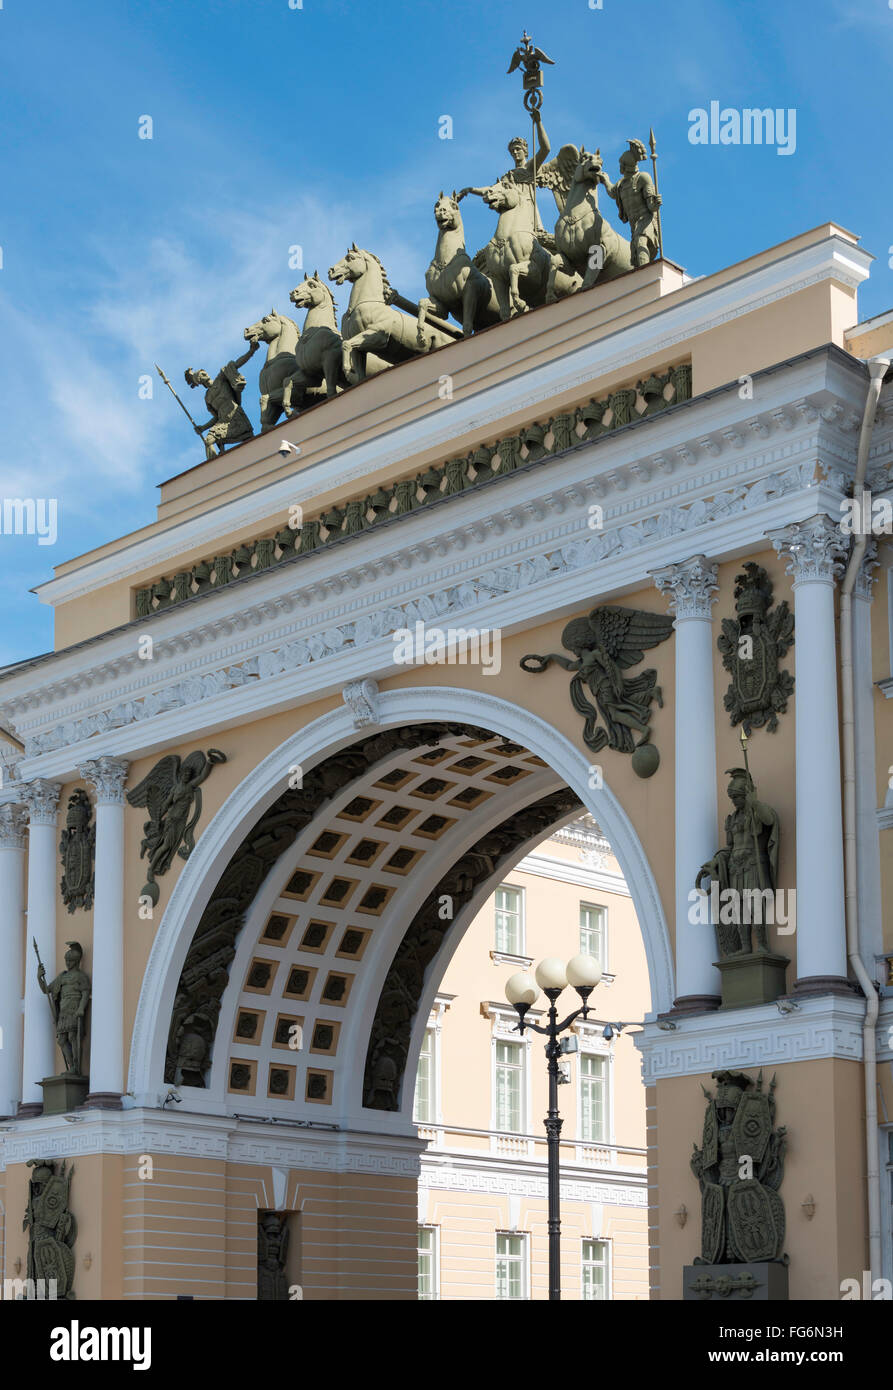 Major général à Archway, Bâtiment de la Place du Palais, Saint Petersburg, Fédération de Russie, Région Nord-Ouest Banque D'Images